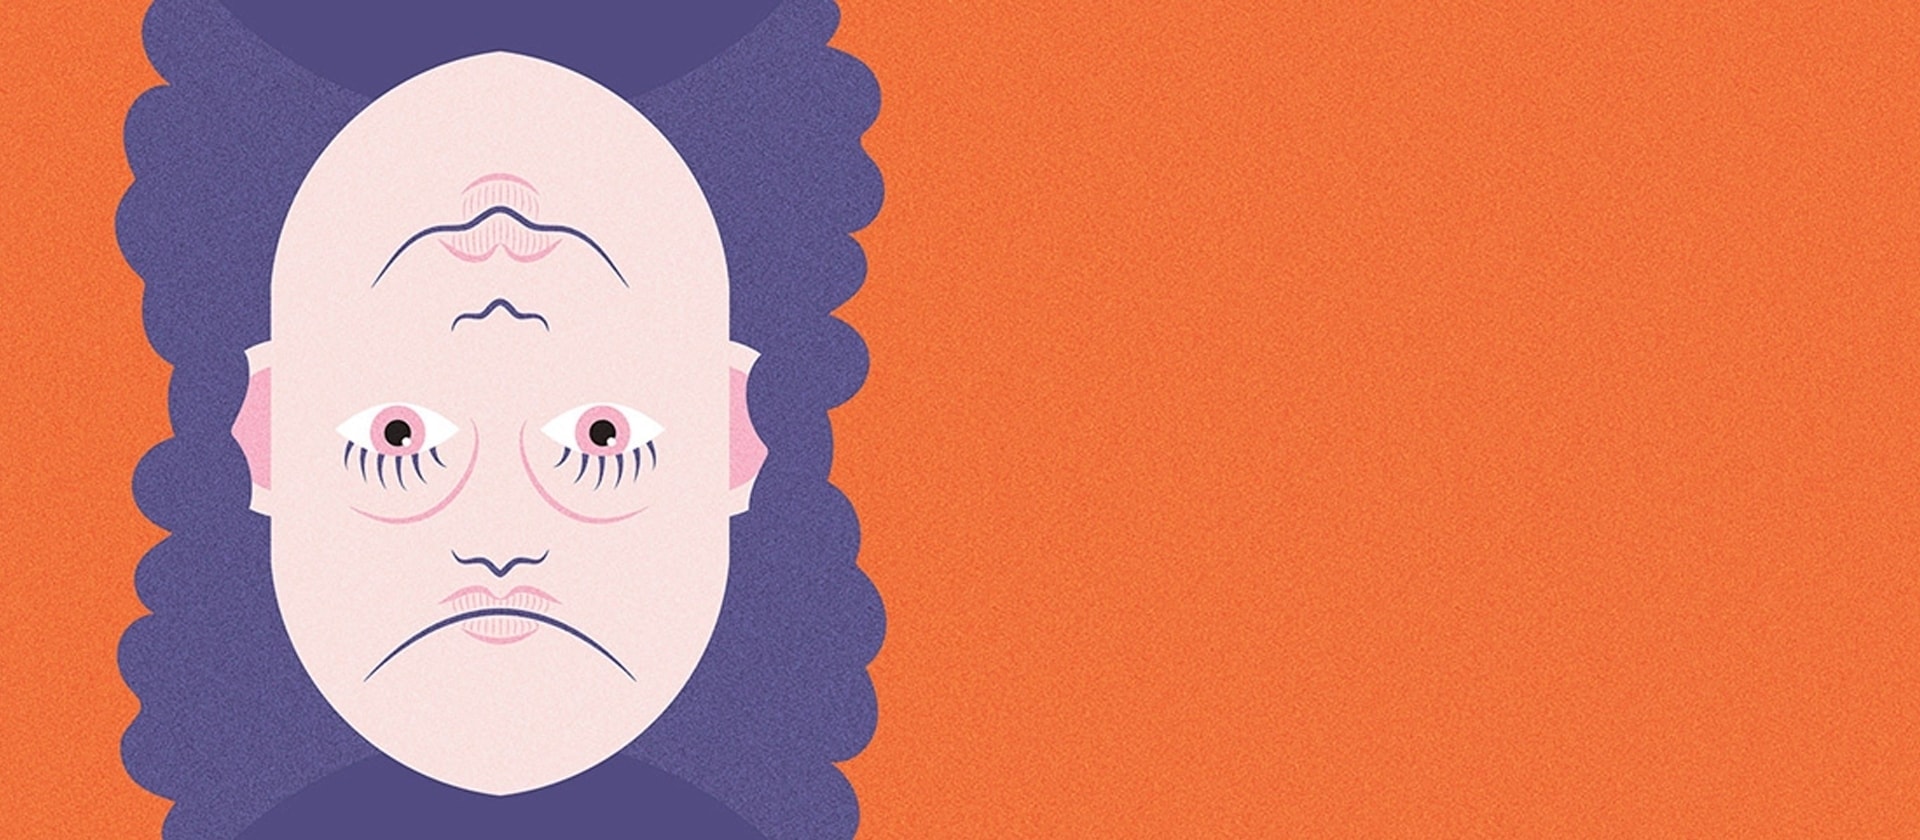 Grafik: Der Kopf eines Mannes mit violettem Haar wird in der Mitte gespiegelt, sodass die Augen aufeinander liegen. Mund, Nase und Kinn gibt es in beiden Richtungen.